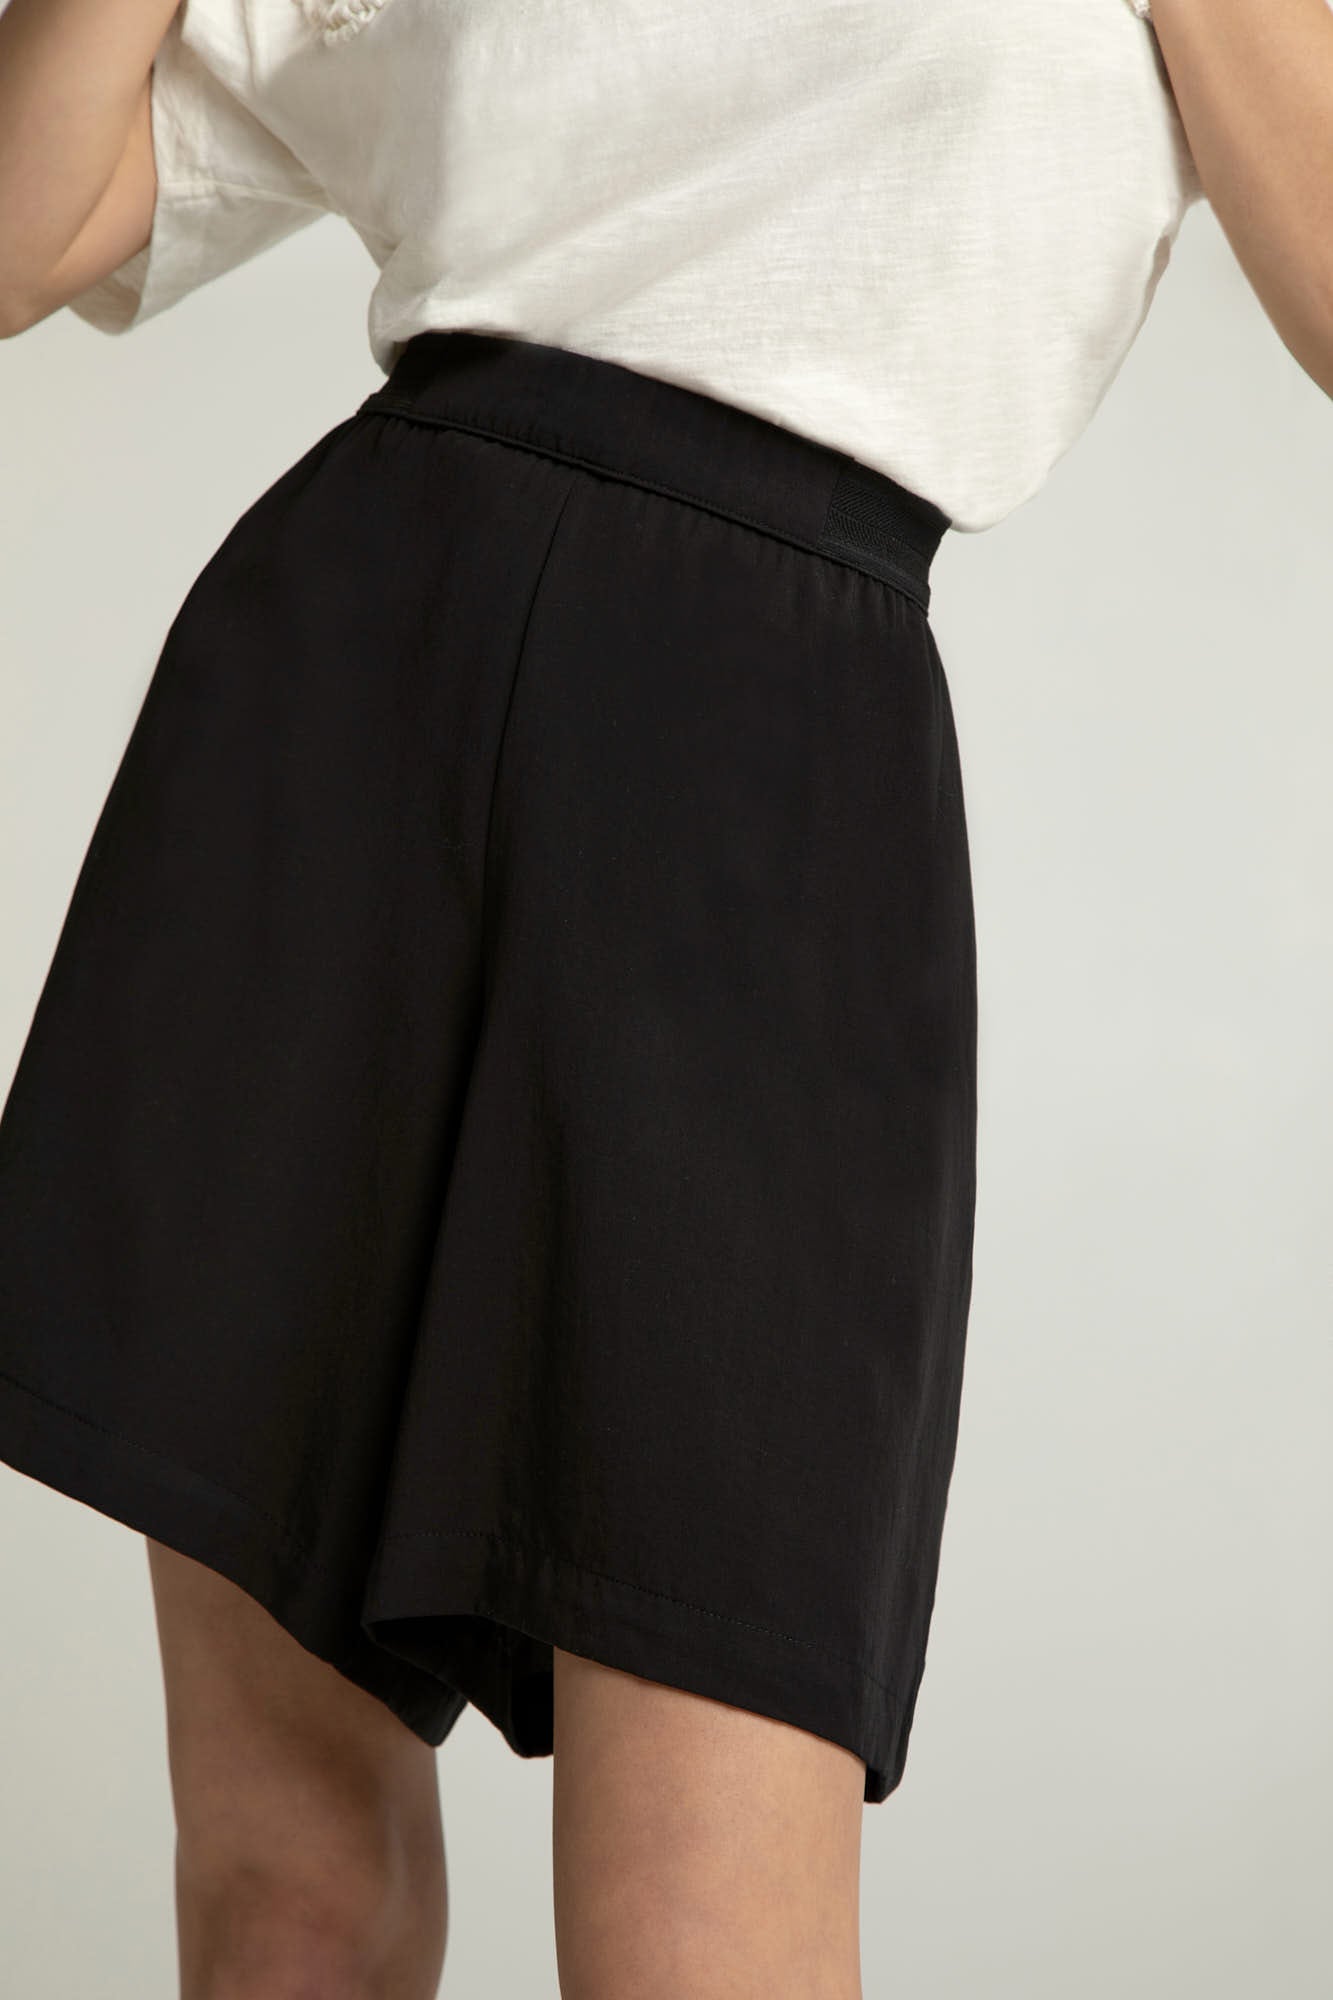 Shorts FELIPPA in black by LOVJOI made of TENCEL™ 